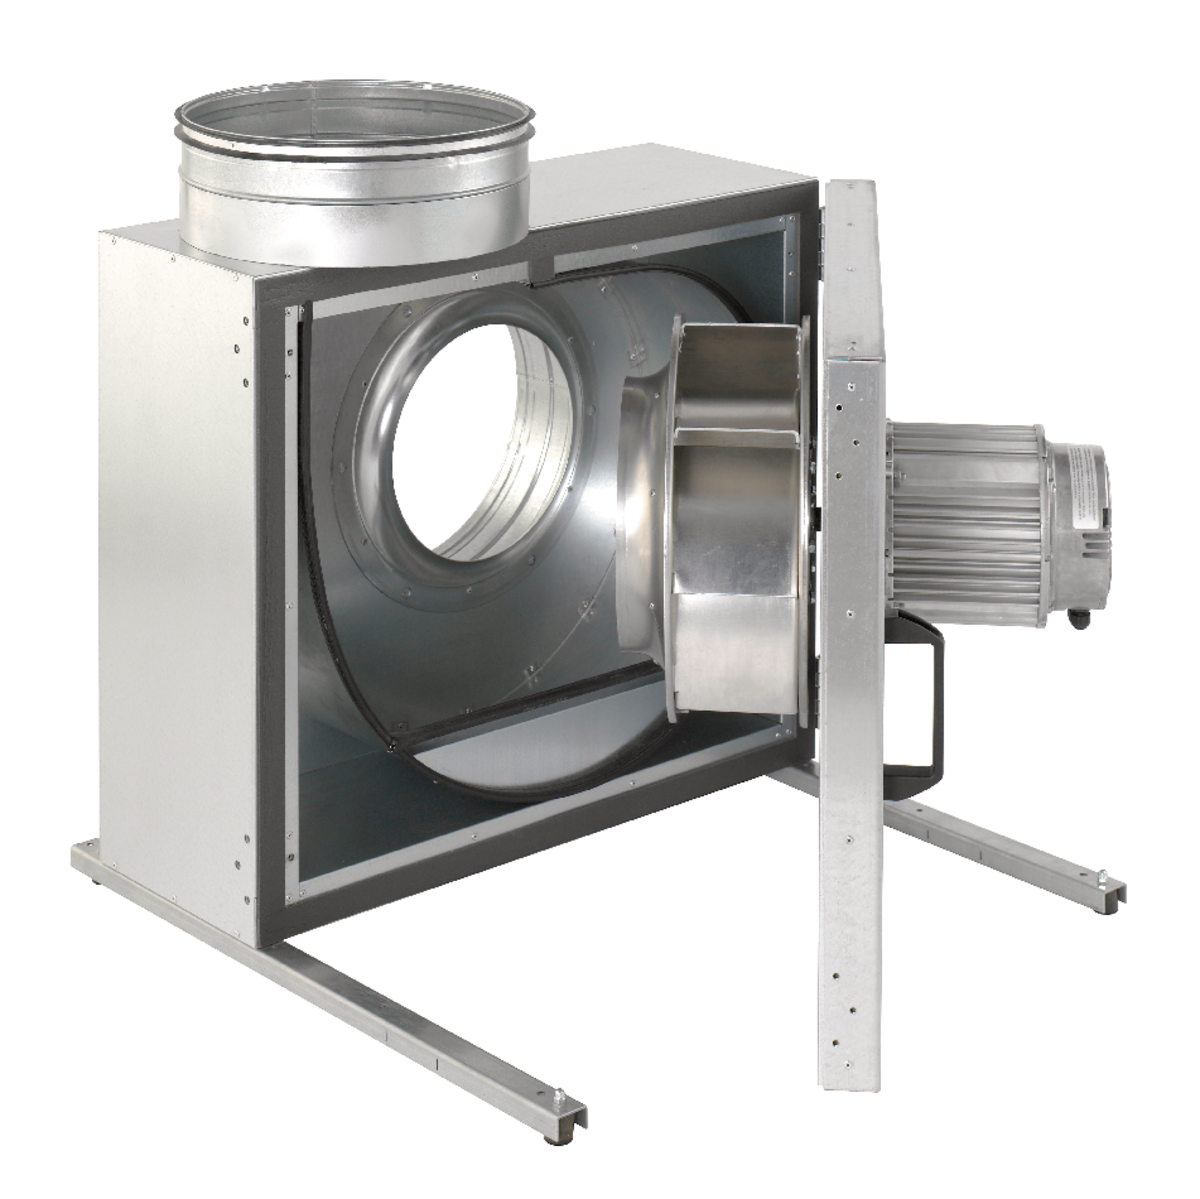 KBR - Ventilateurs centrifuges - Ventilateurs (Ventilation et Traitement d’air) - Produits Ventilation & Traitement d’air - Systemair